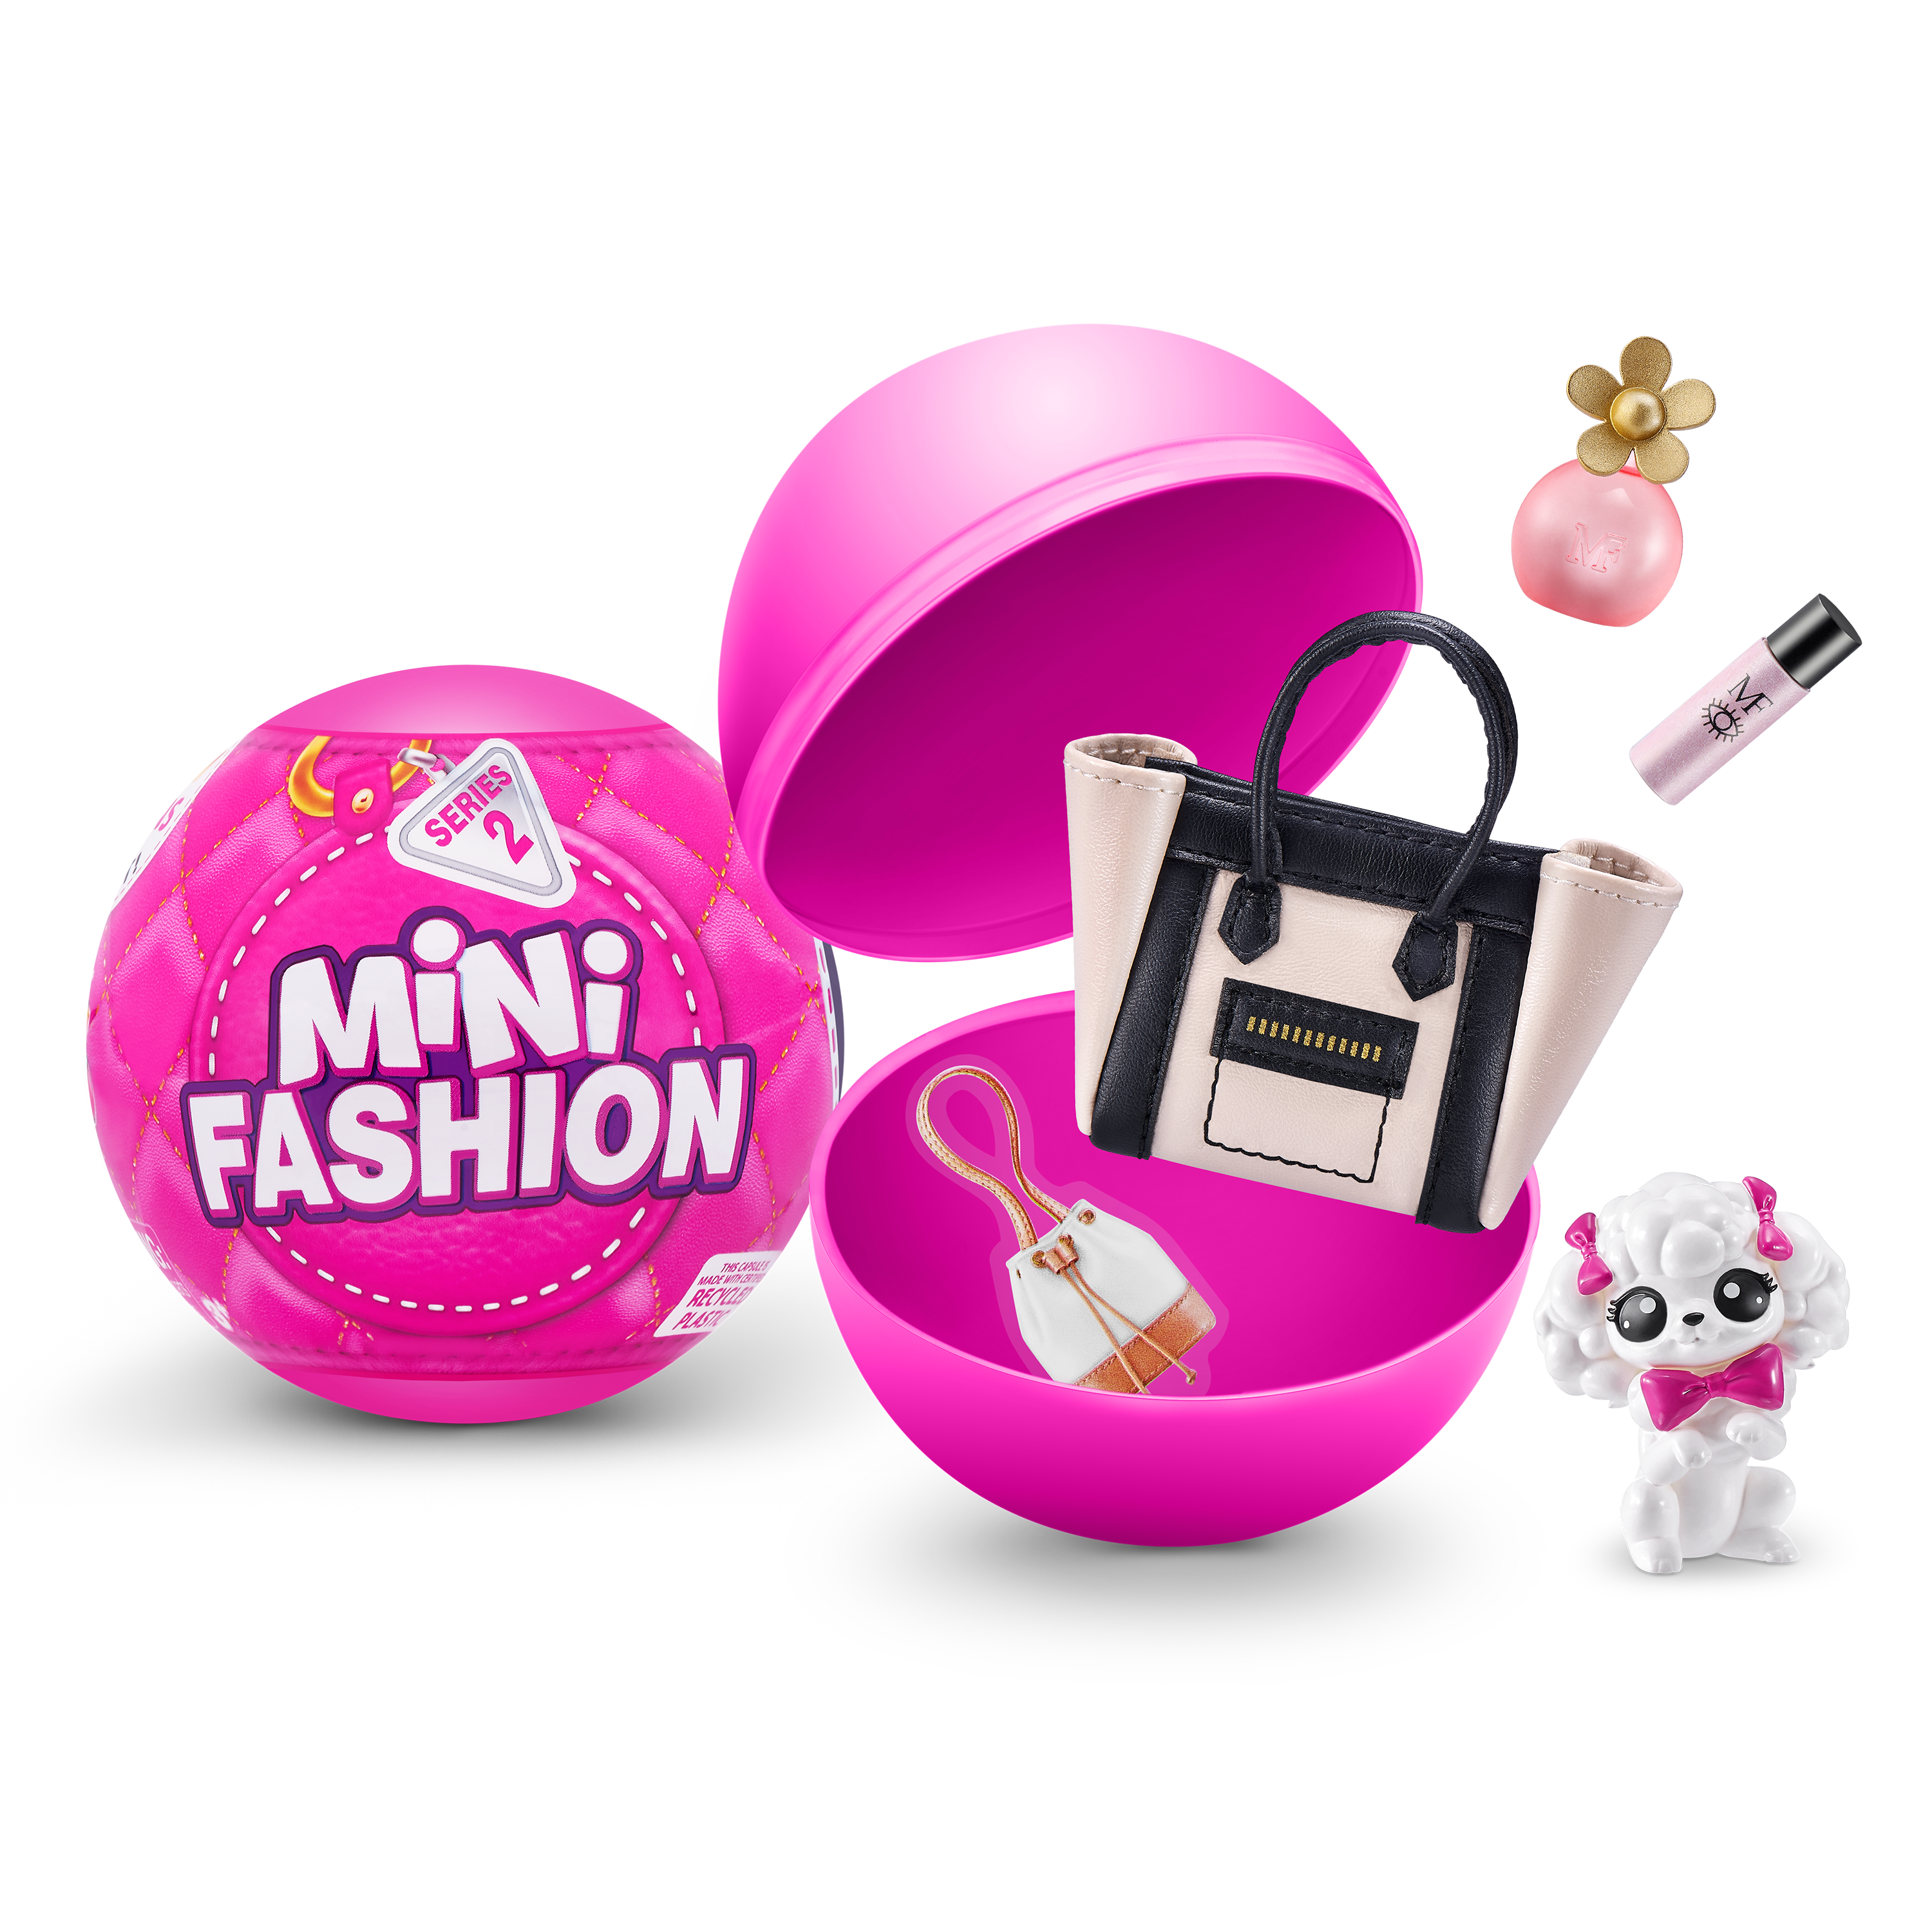 Fashion Mini Brands -  Sweden